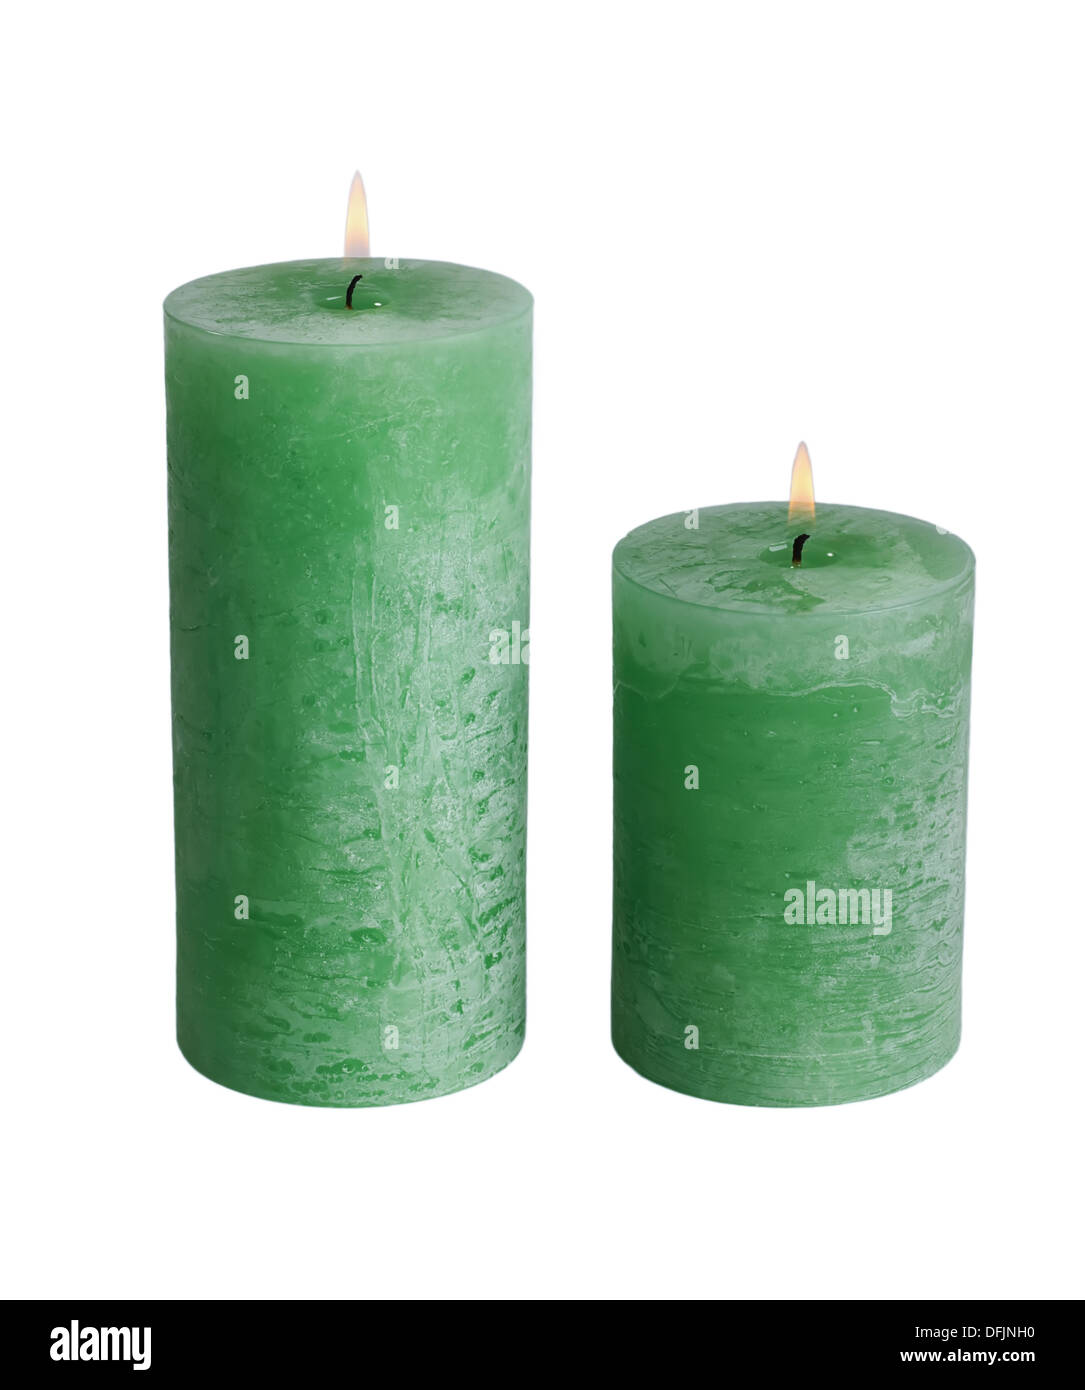 Large green burning candle.Isolated on white. Stock Photo